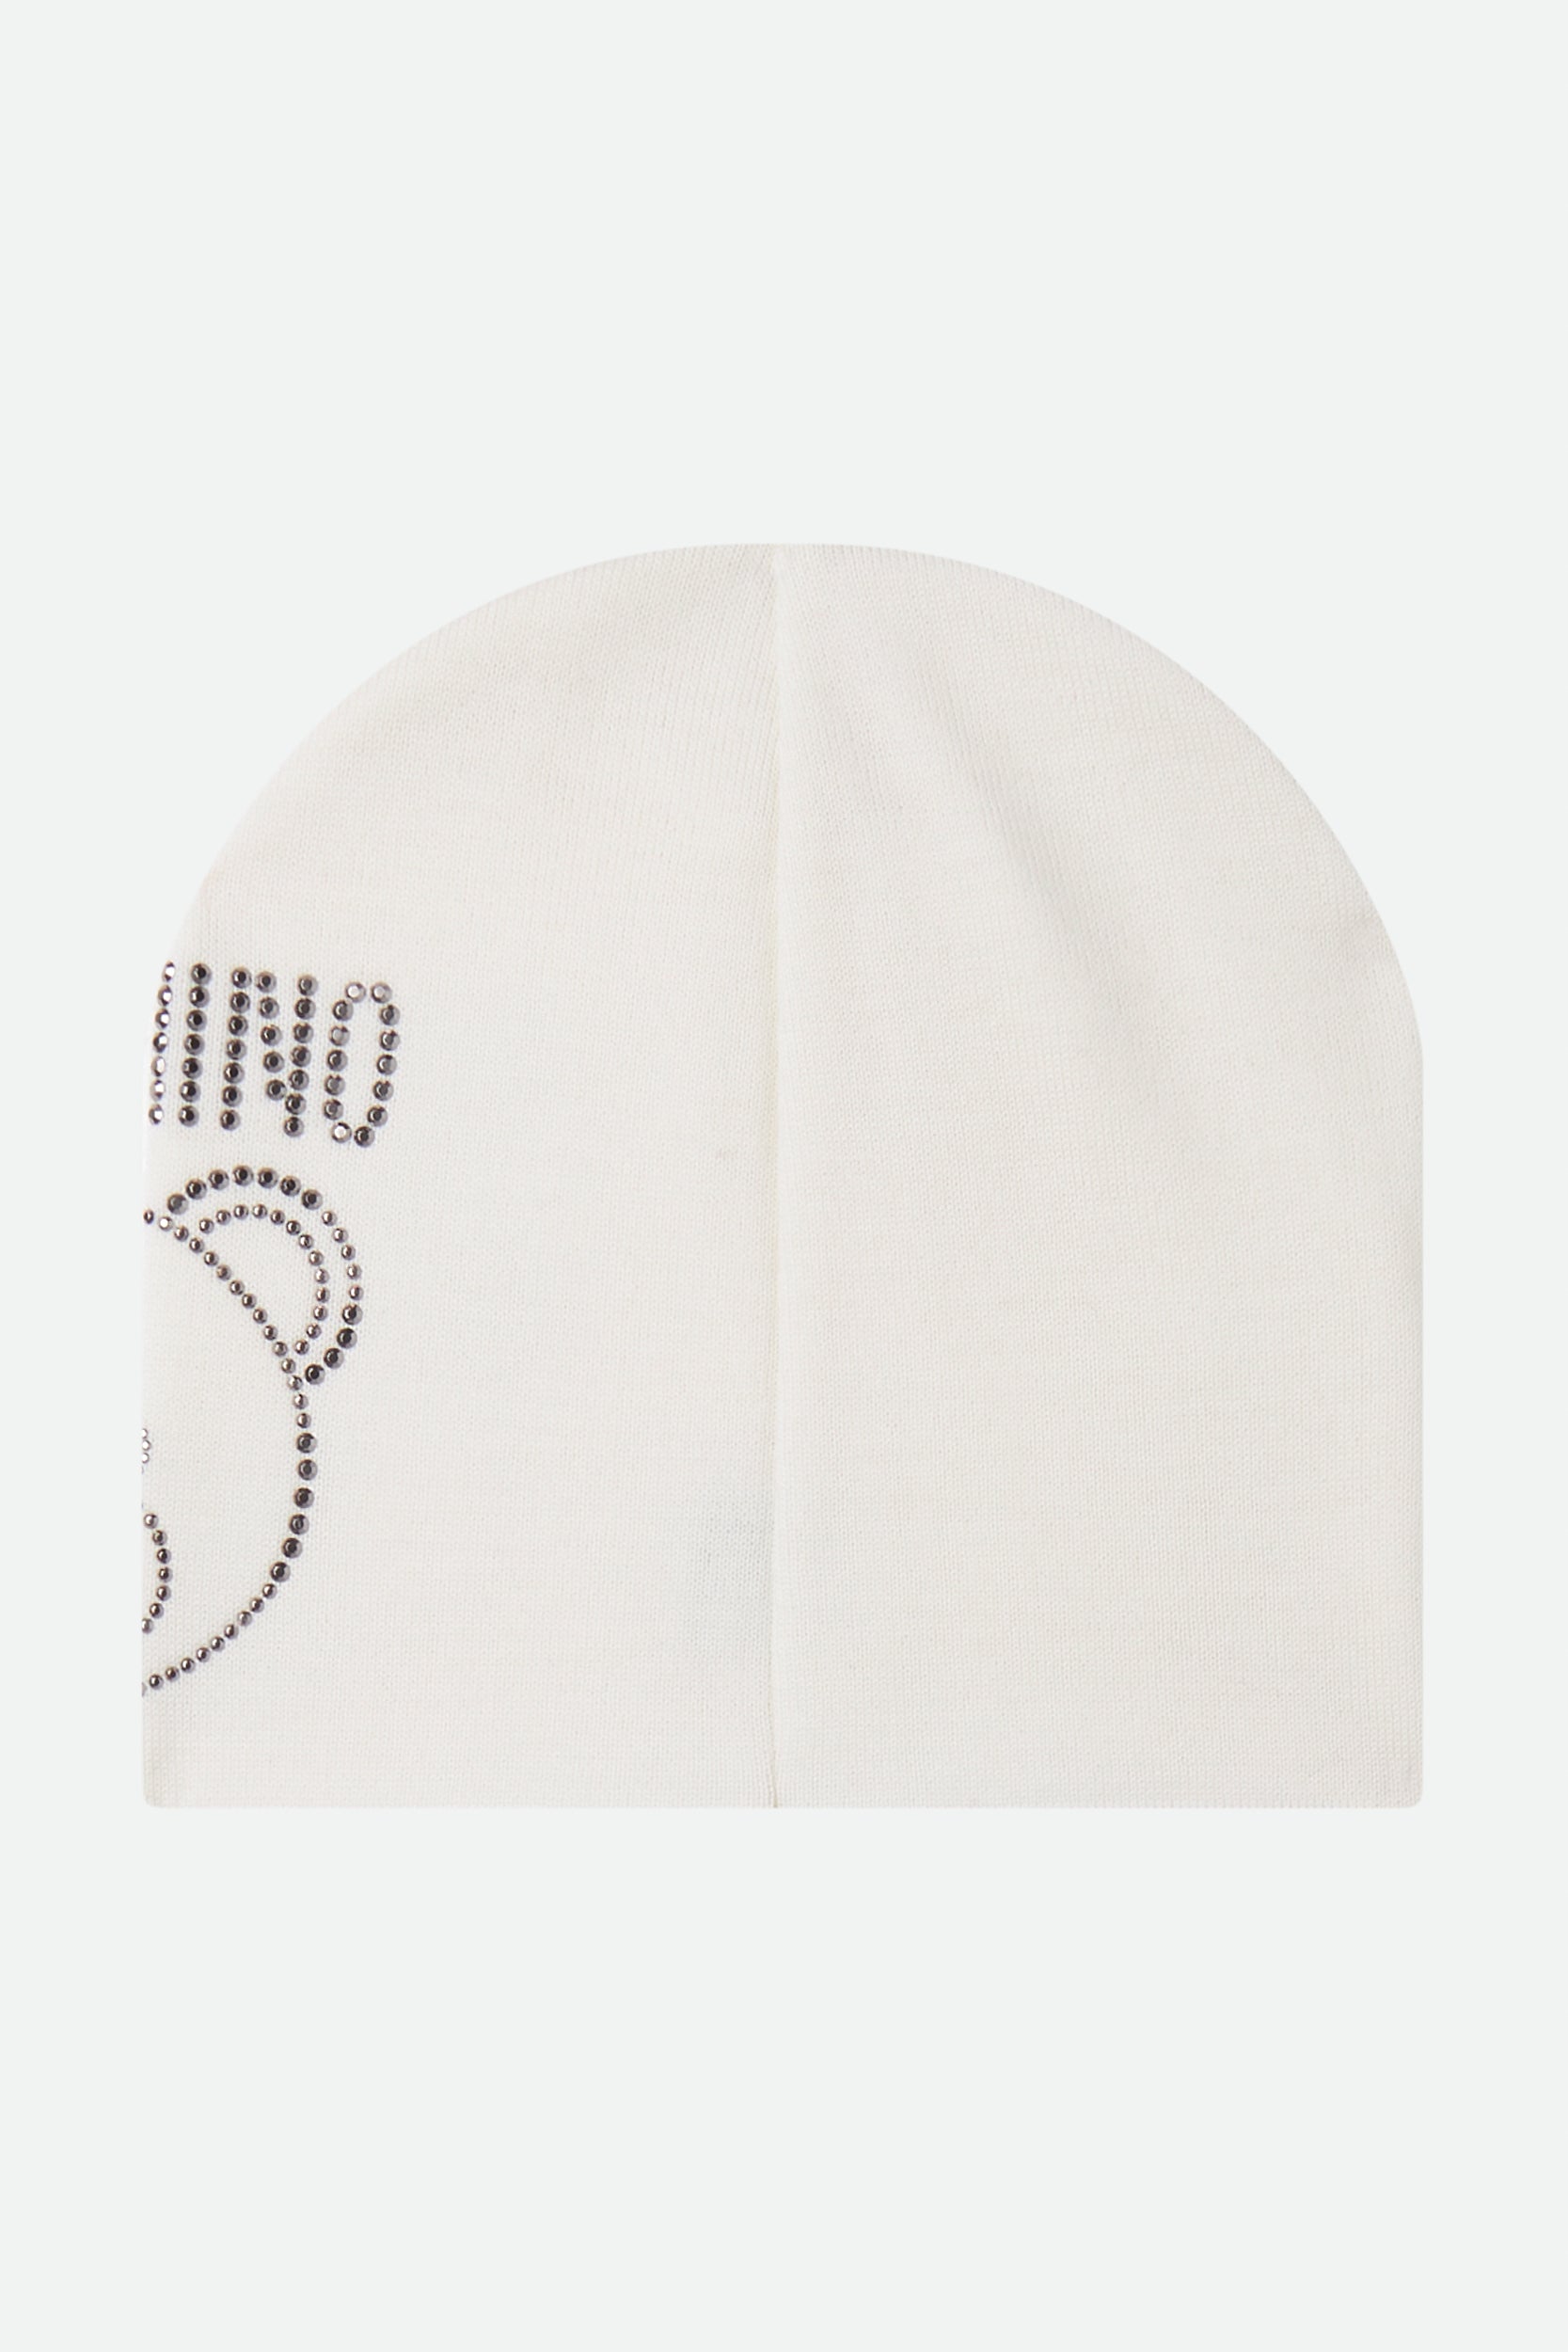 Moschino Cappello Bianco